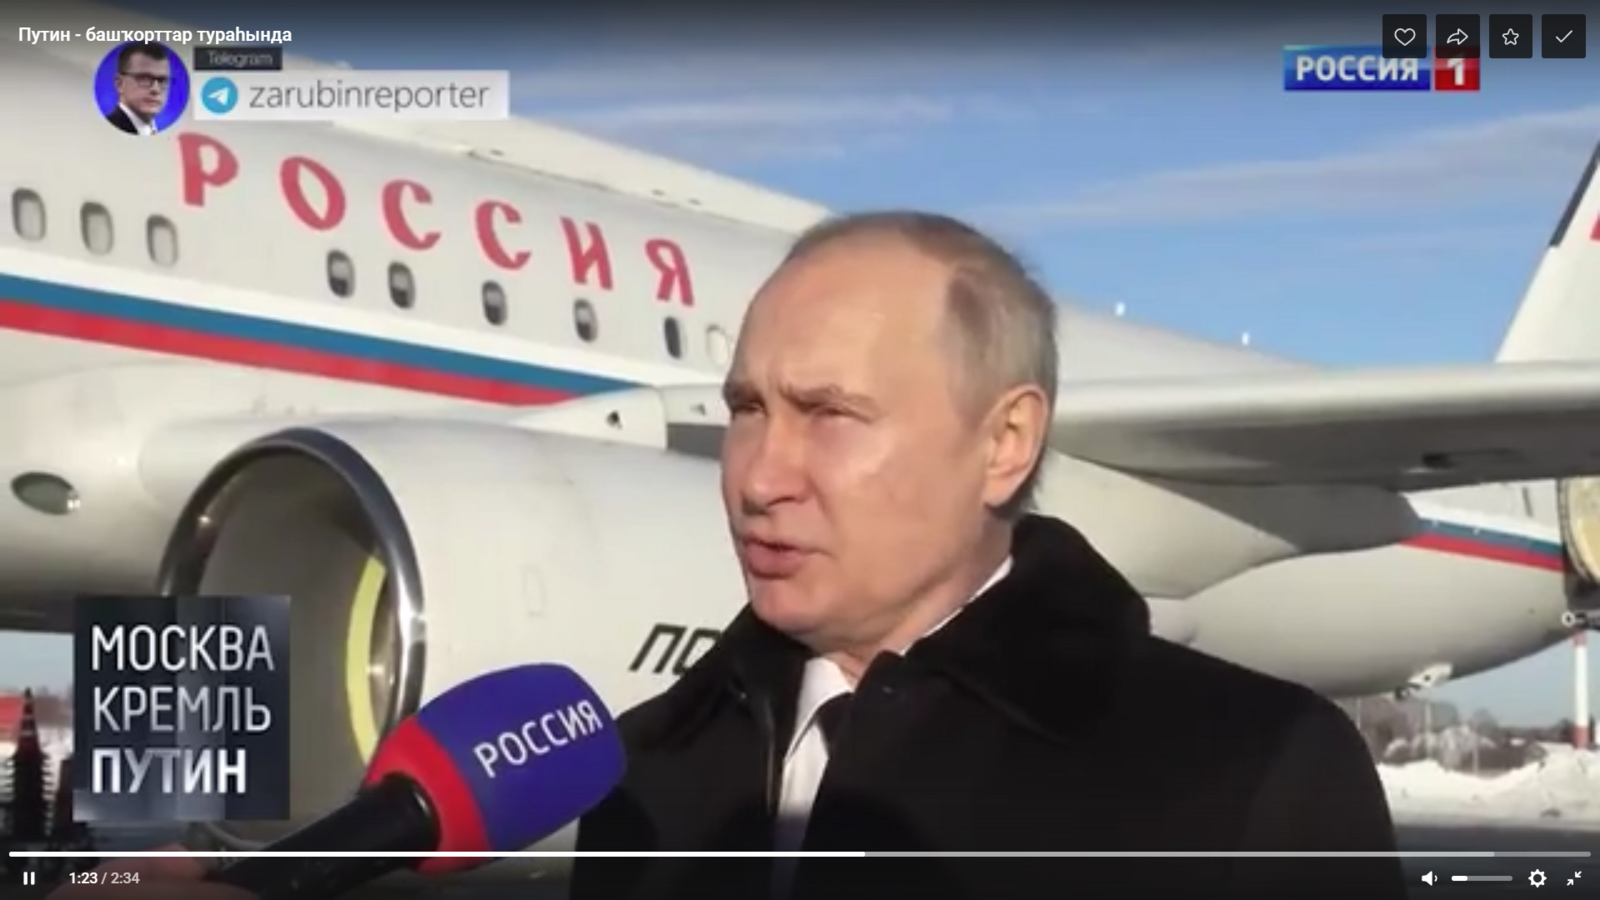 Путин - башҡорттар тураһында